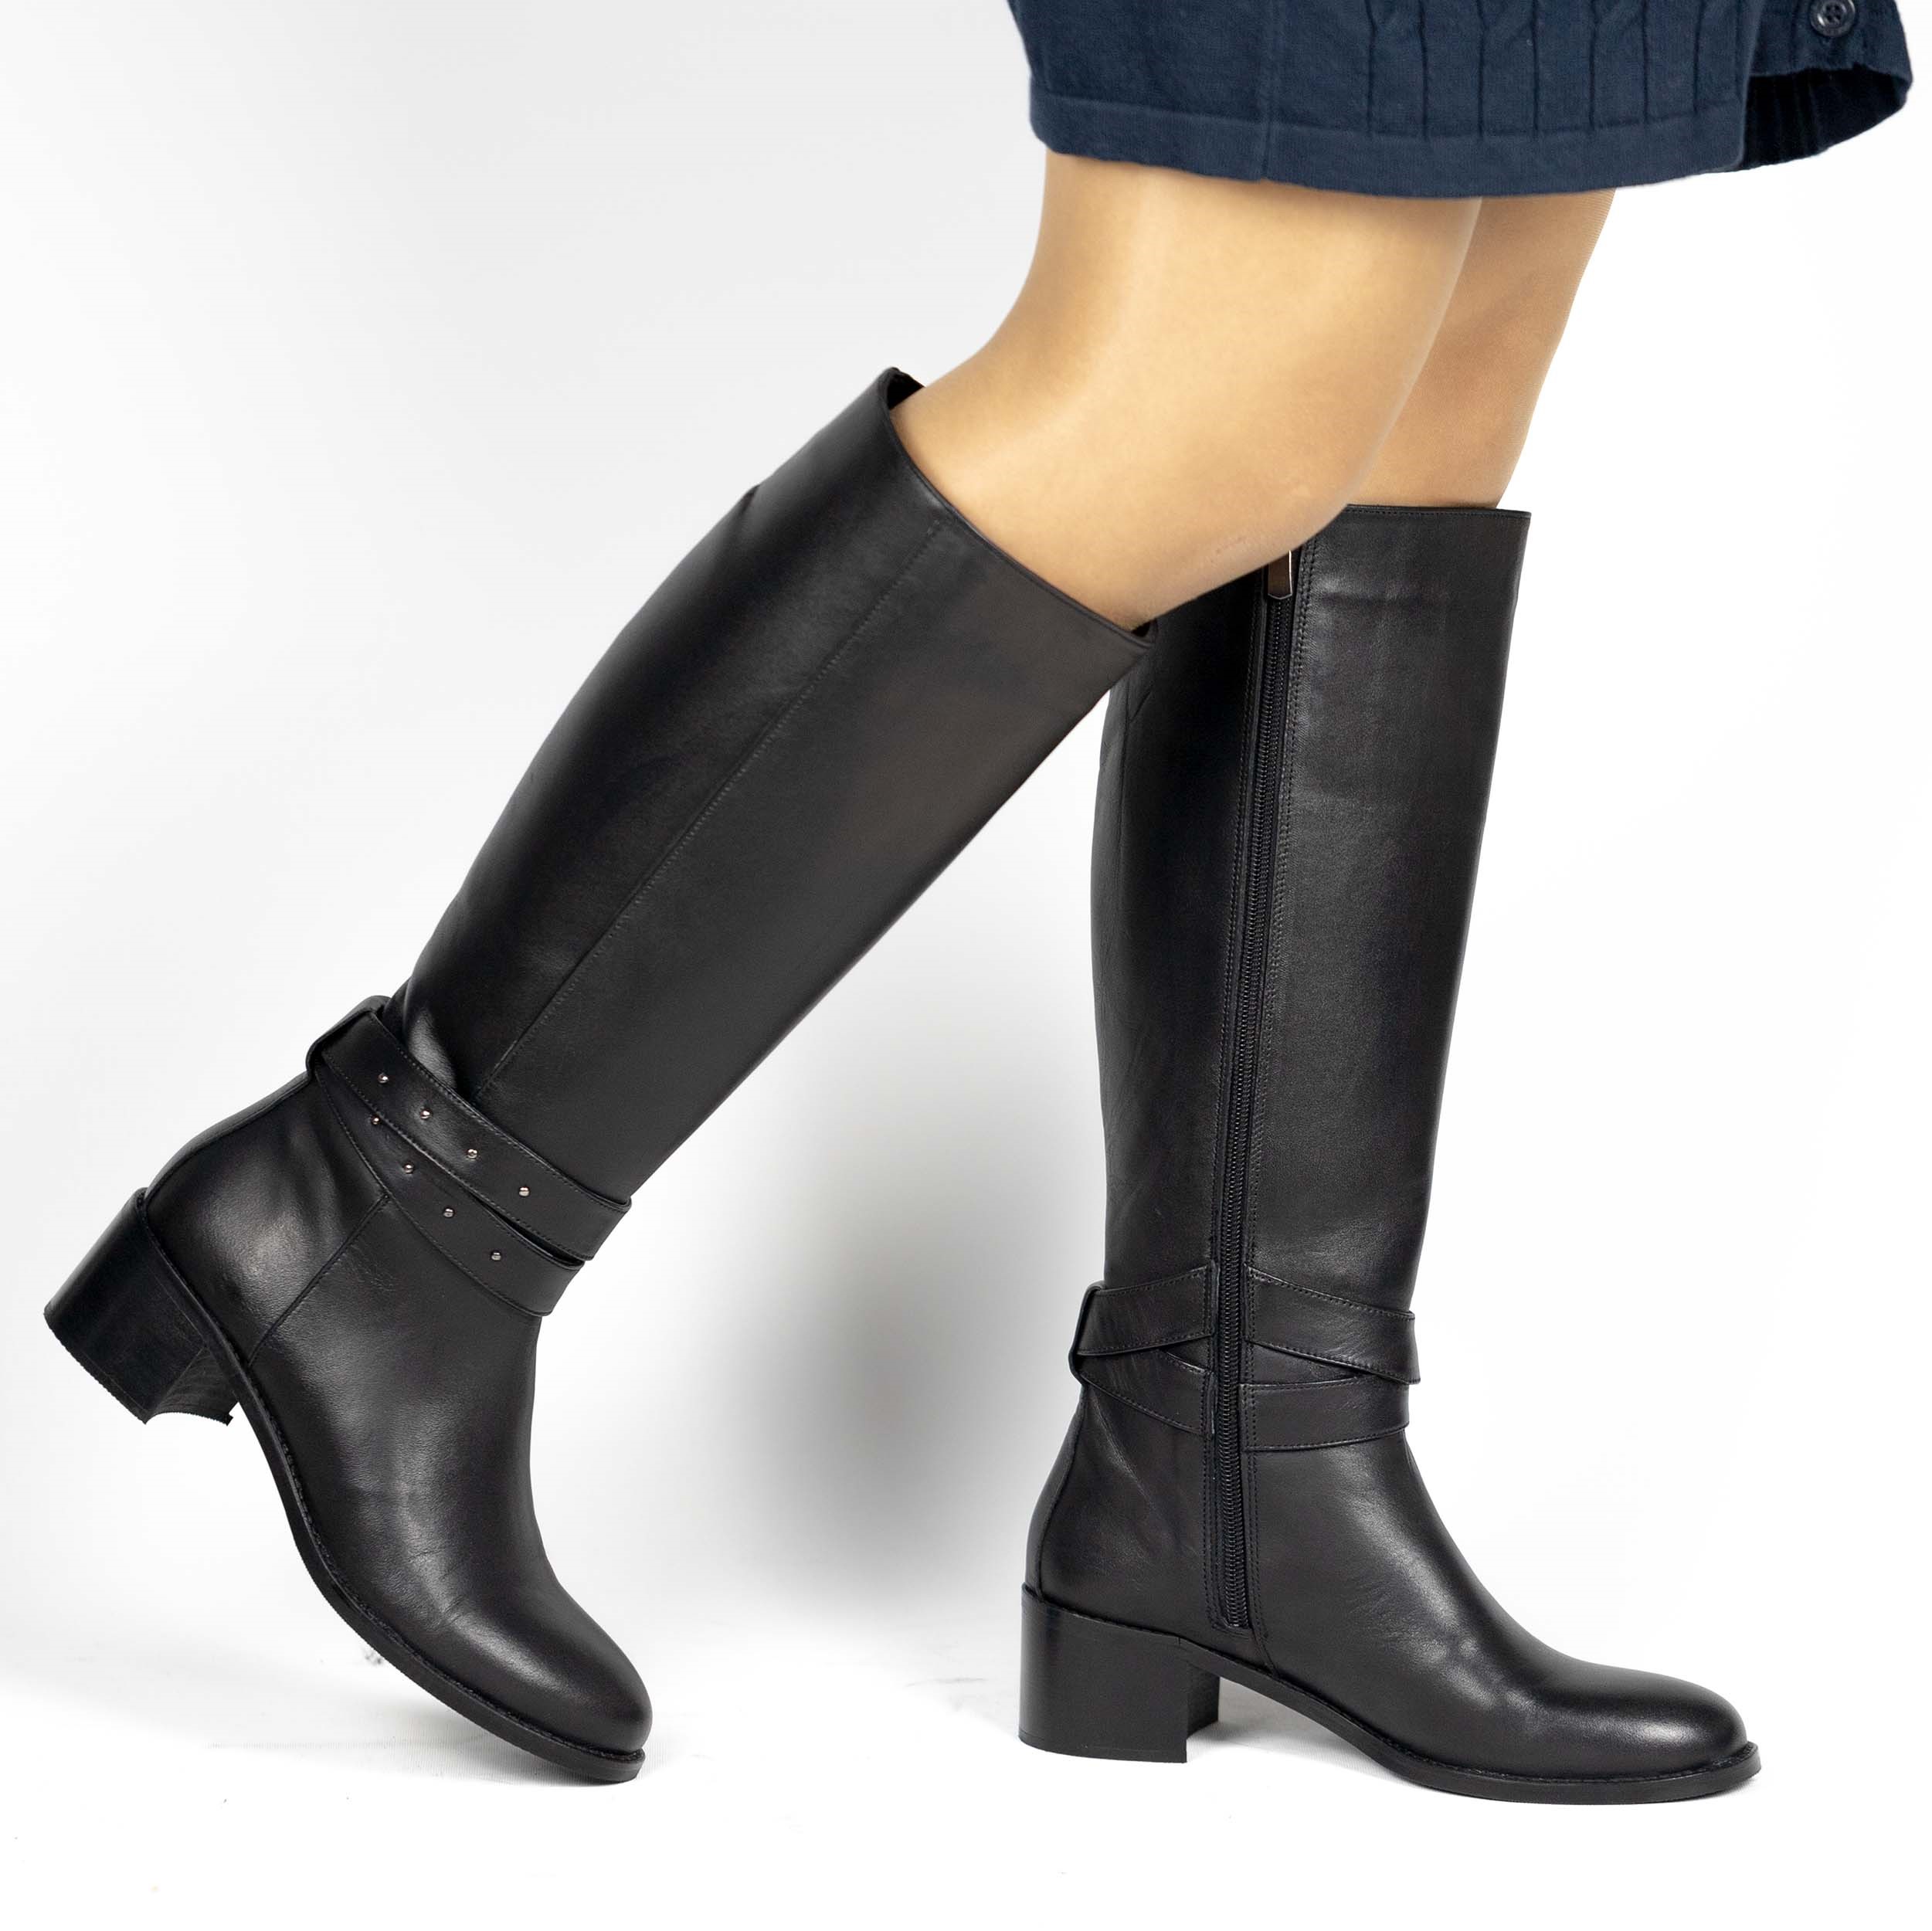 TwoEgoist Kadın Hakiki Deri Siyah Günlük Klasik Fermuarlı Sıcak Astarlı 5 cm Topuklu Geniş Kalıp Çizme, Renk: Siyah, Beden: 36